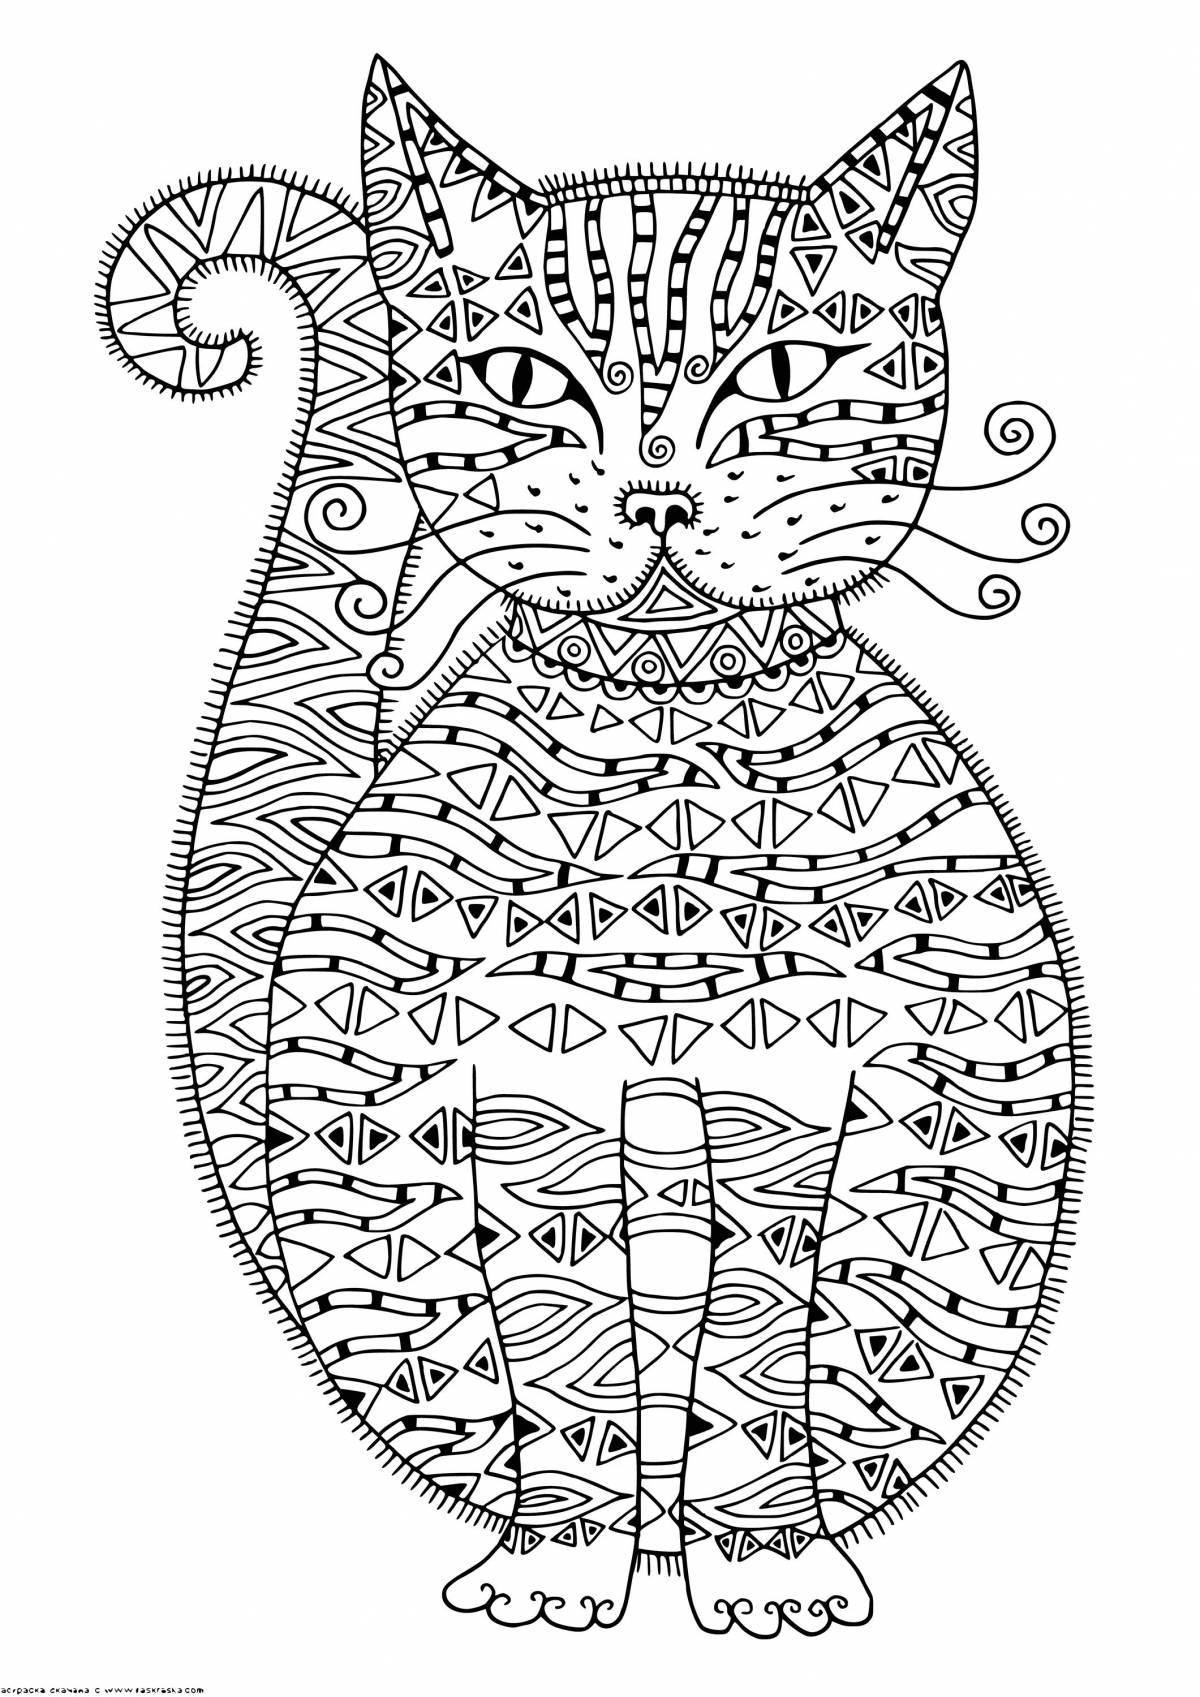 Mystical coloring complex cat